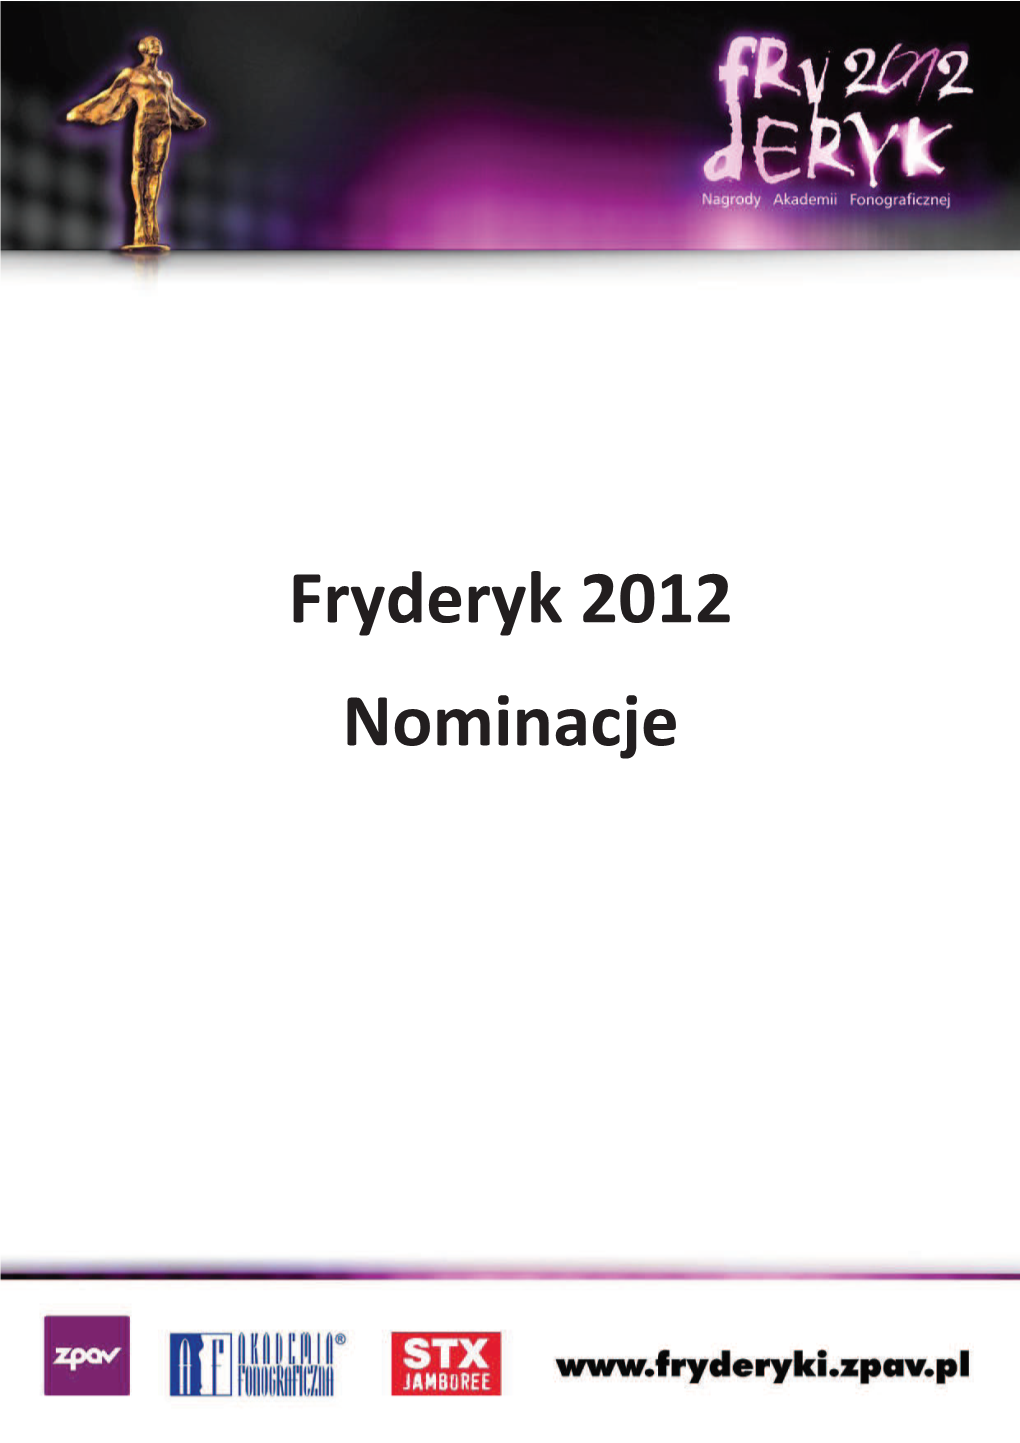 Fryderyk 2012 Nominacje